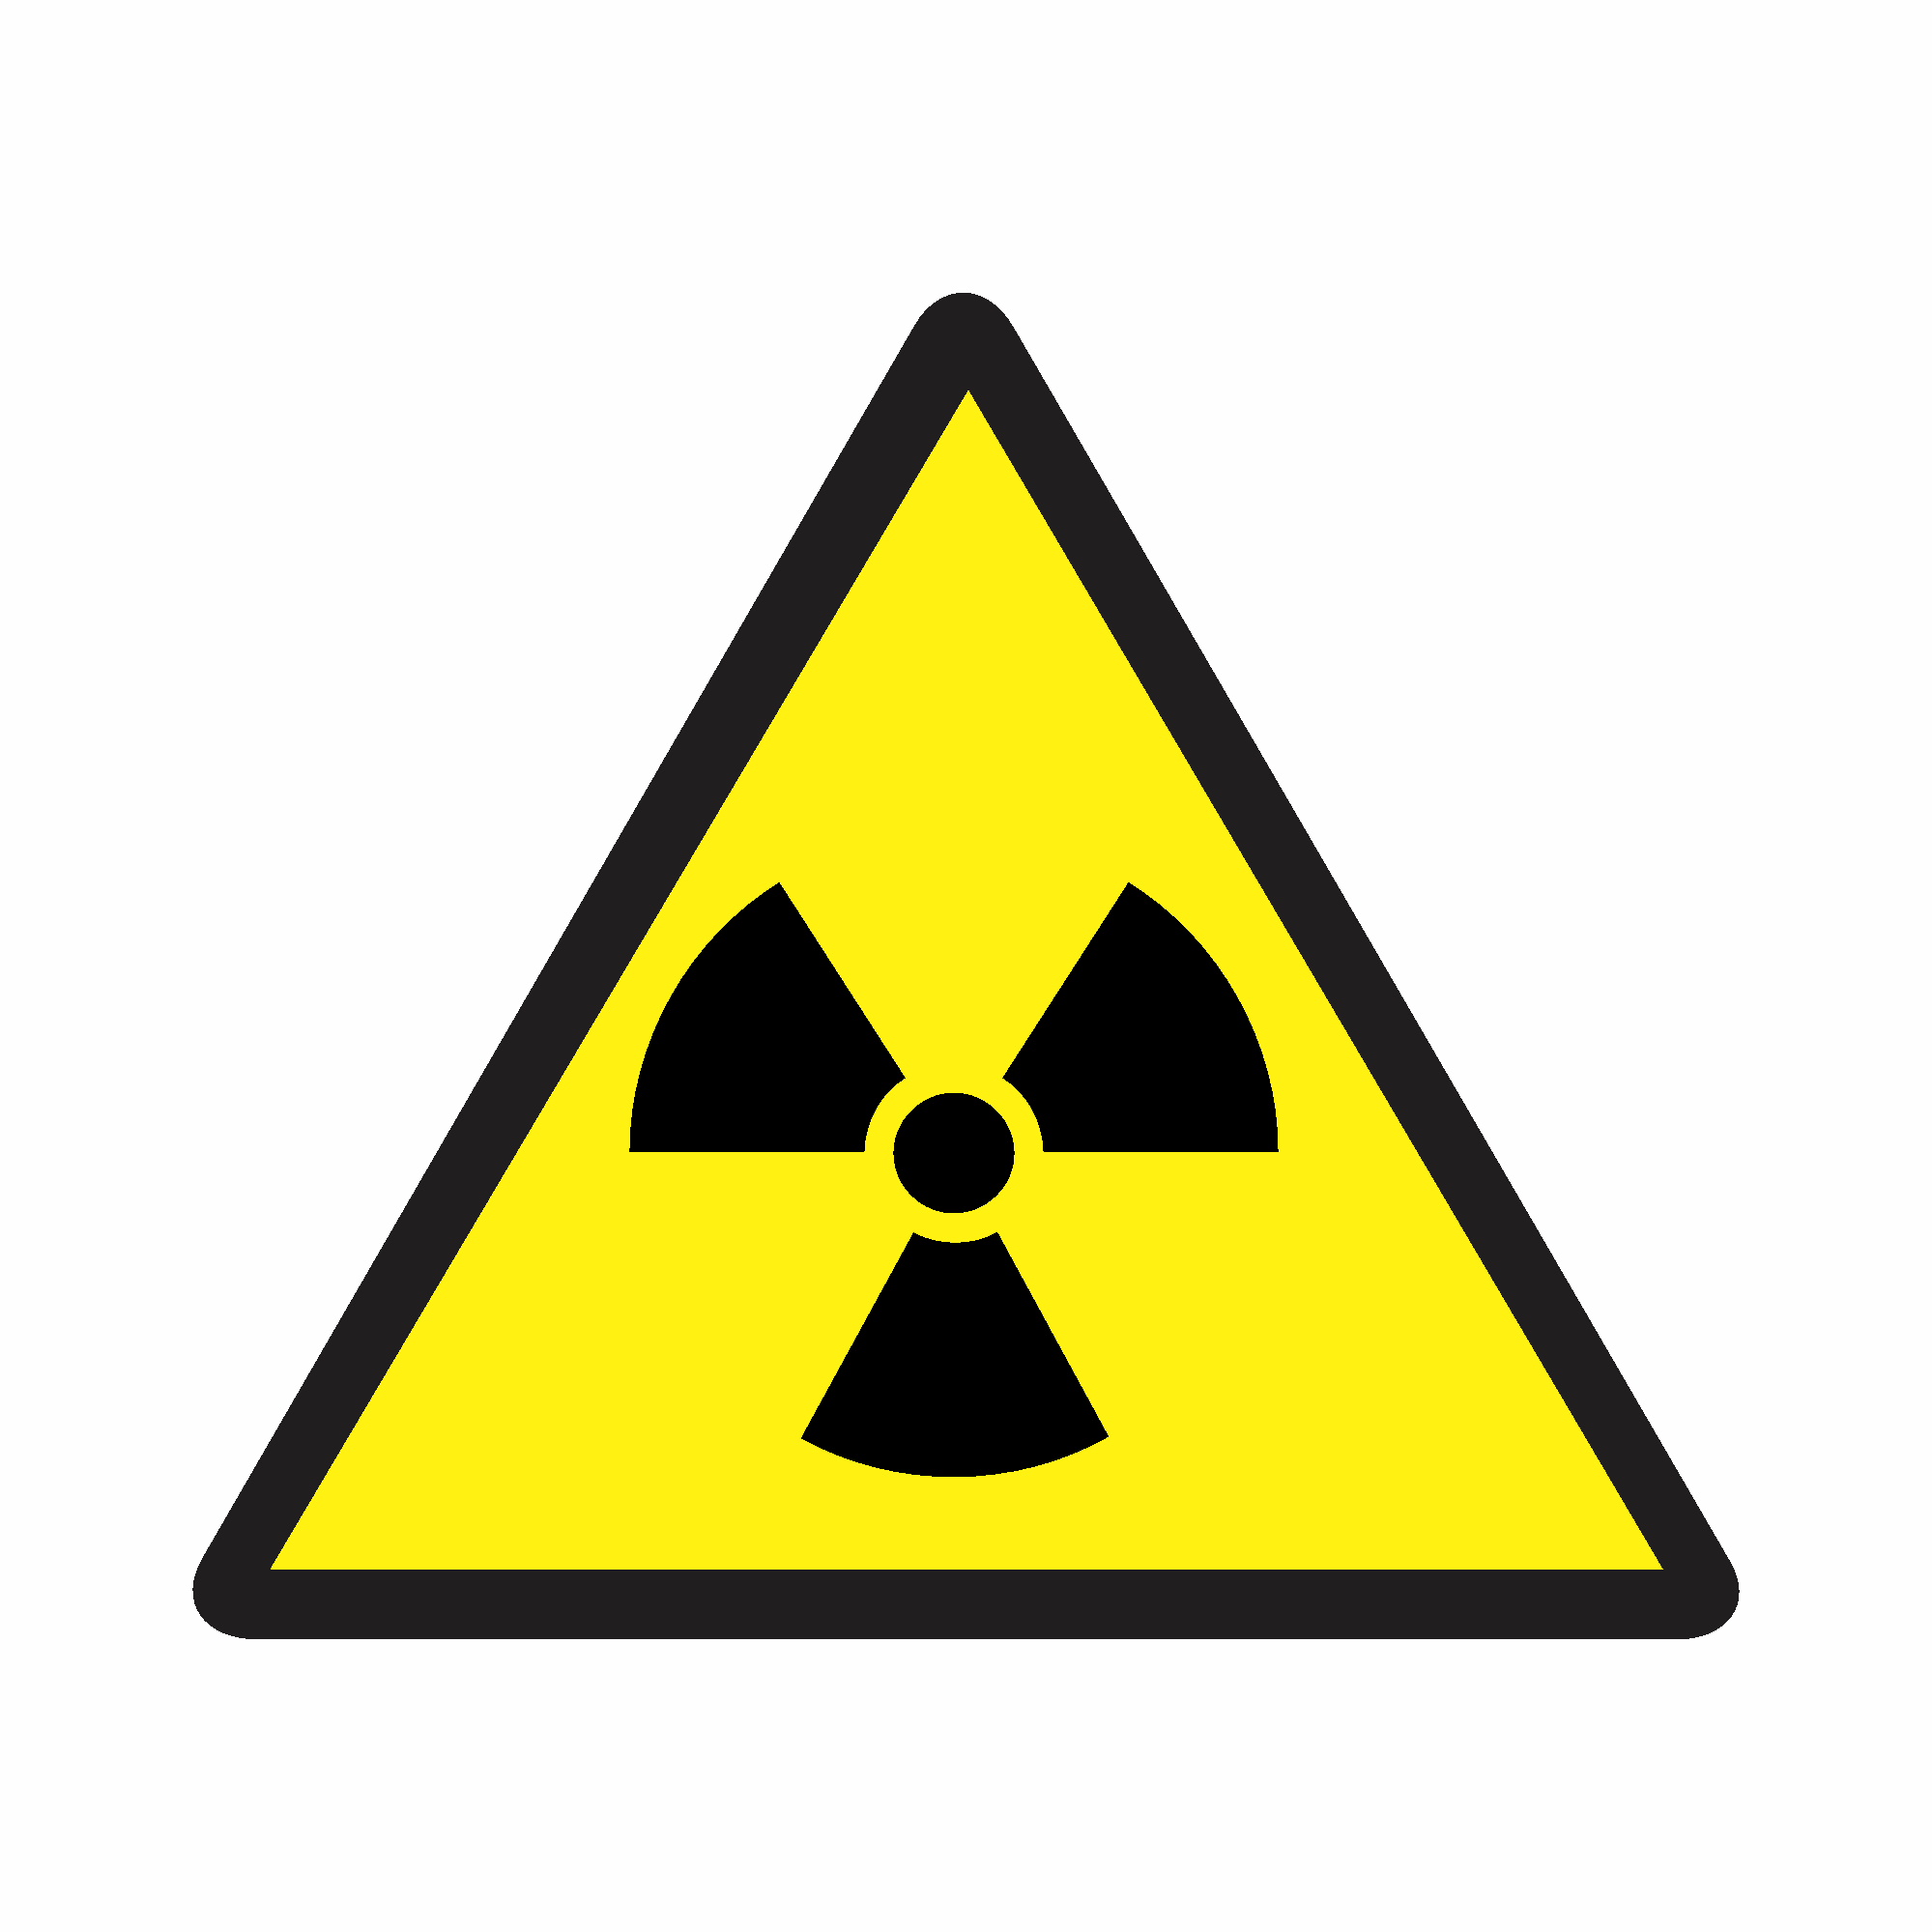 A6 - Cuidado, risco de radiação